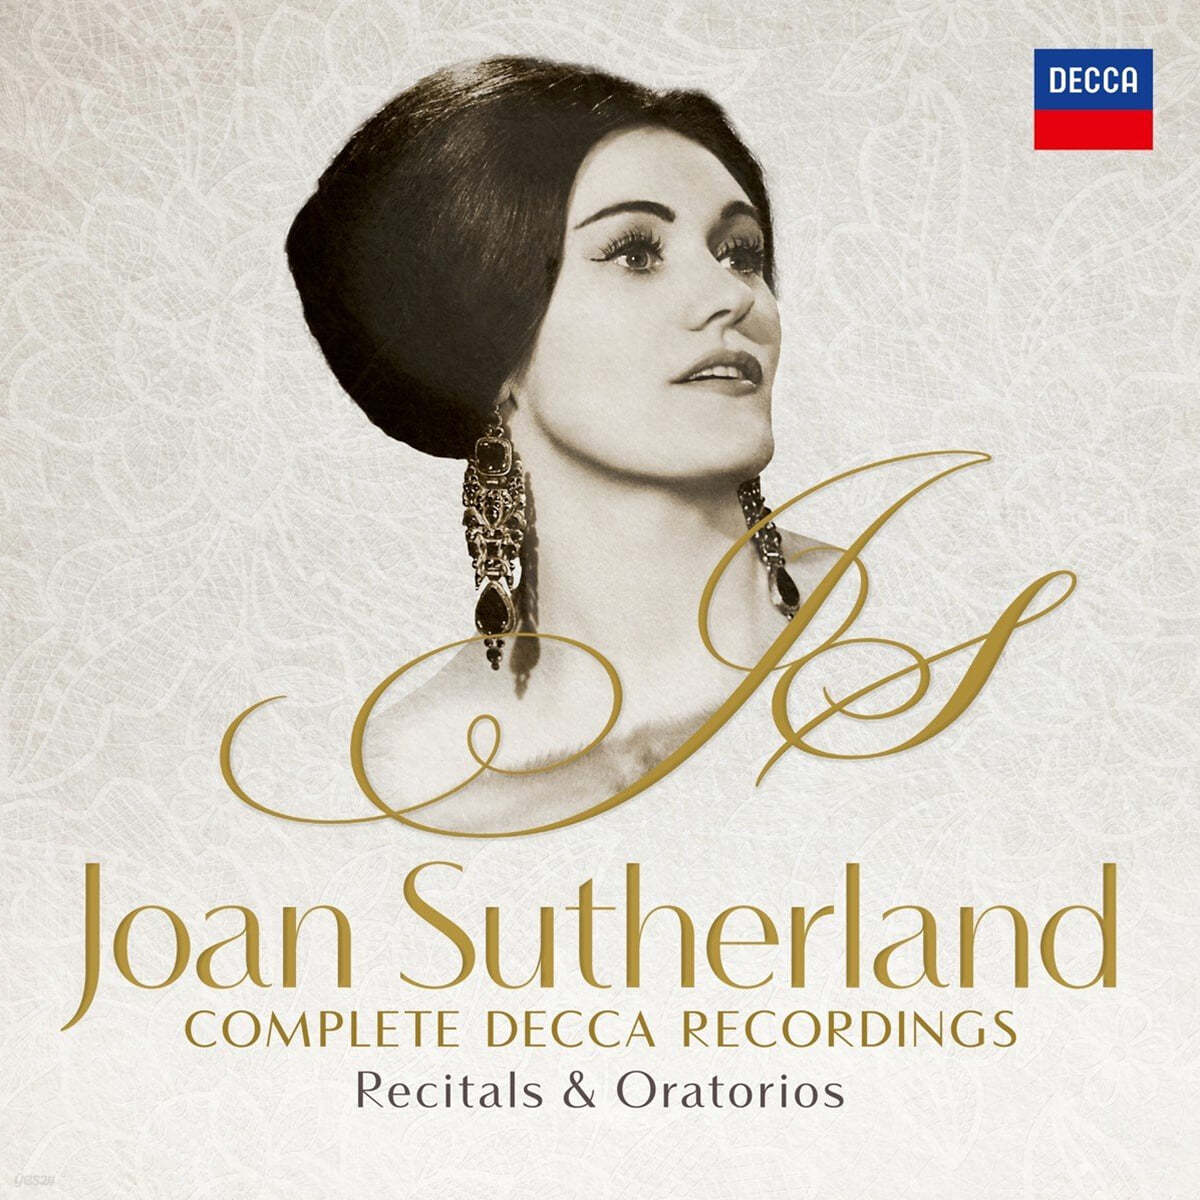 Joan Sutherland 조안 서덜랜드 Decca 레이블 녹음 전집 Vol.1 - 오라토리오와 리사이틀 (Complete Decca Recordings - Recitals & Oratorios)